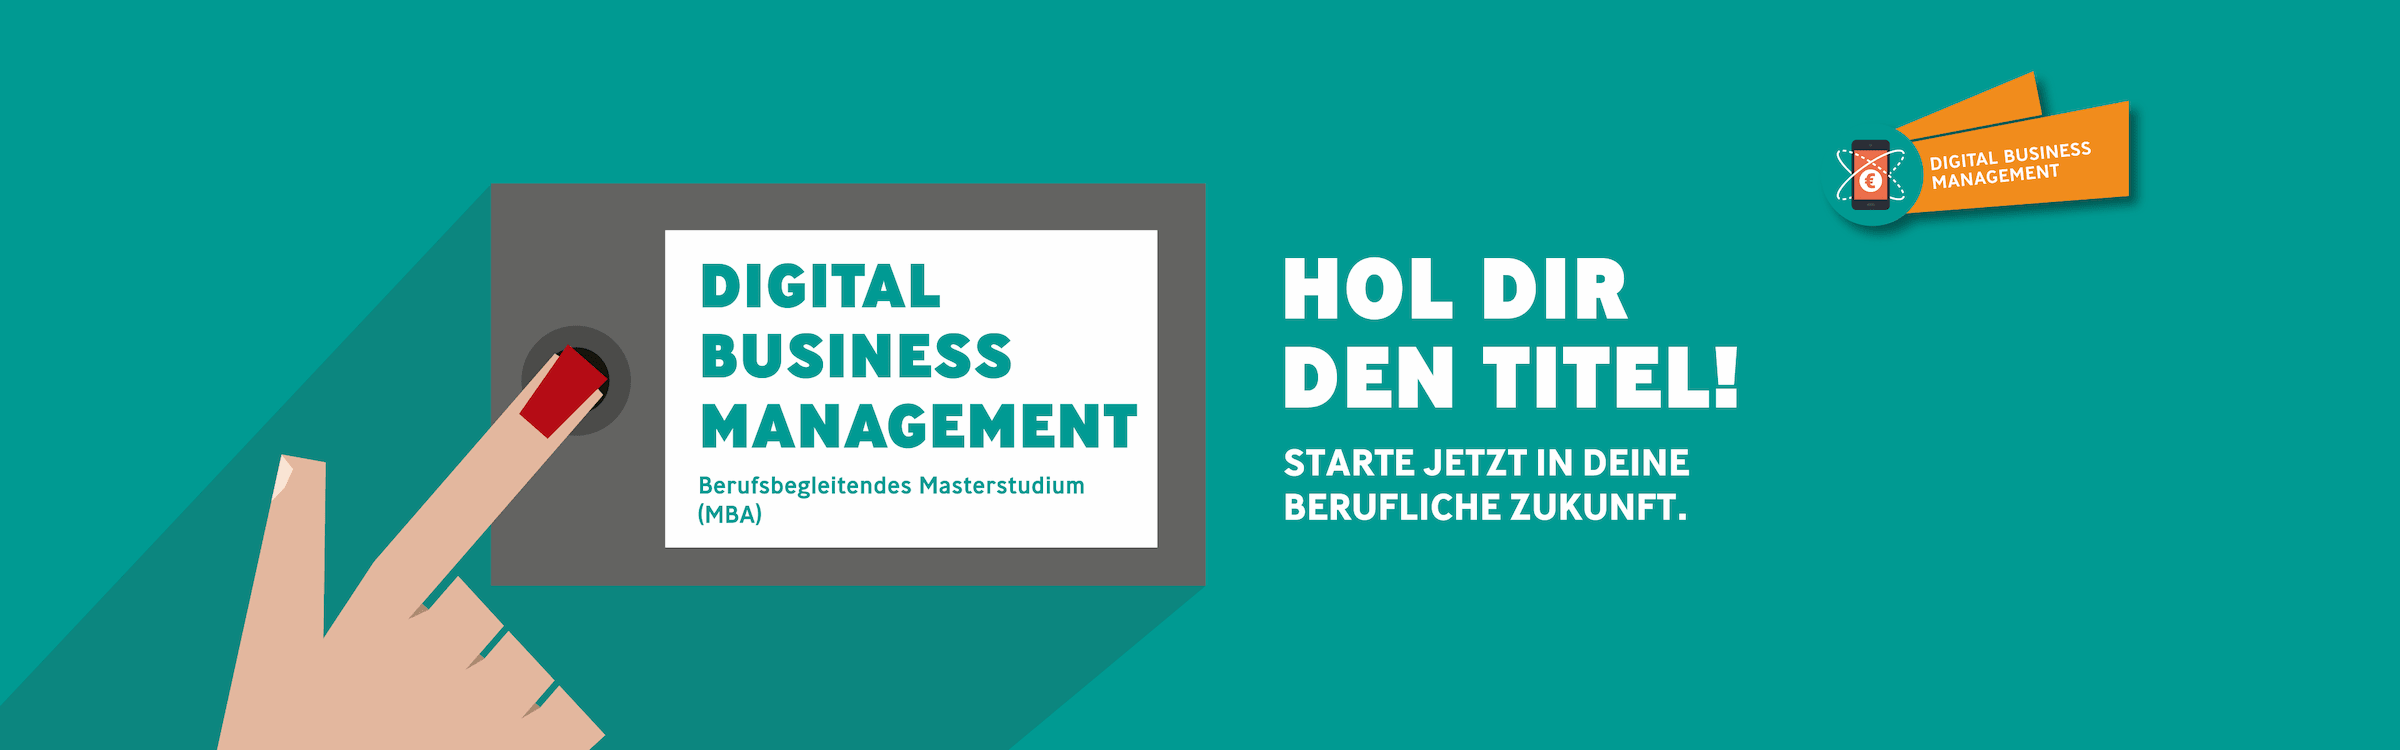 Bild für Banner Digital Business Management